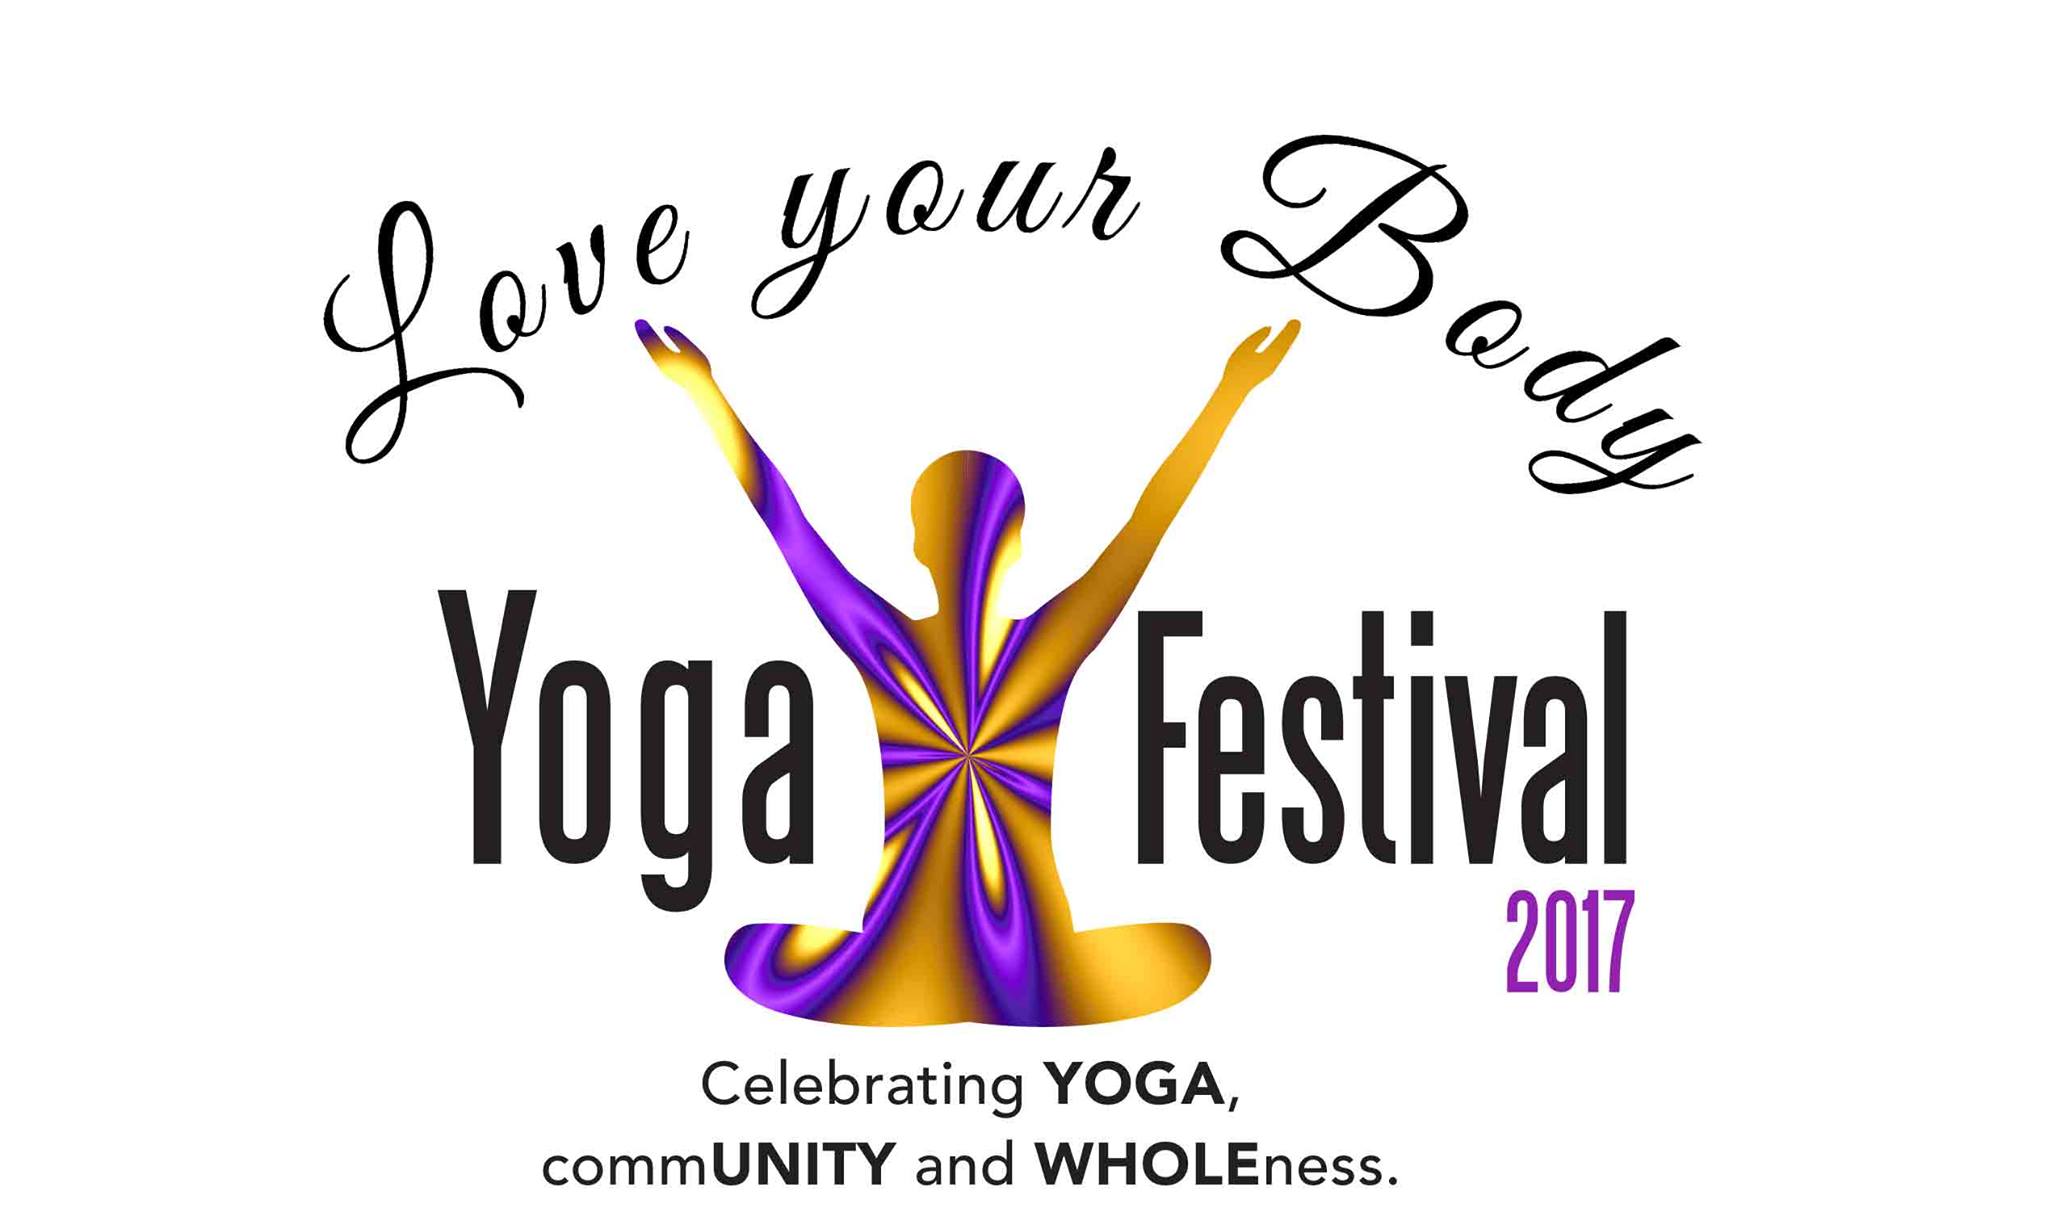 Love Your Body Yoga Festival returns June 11